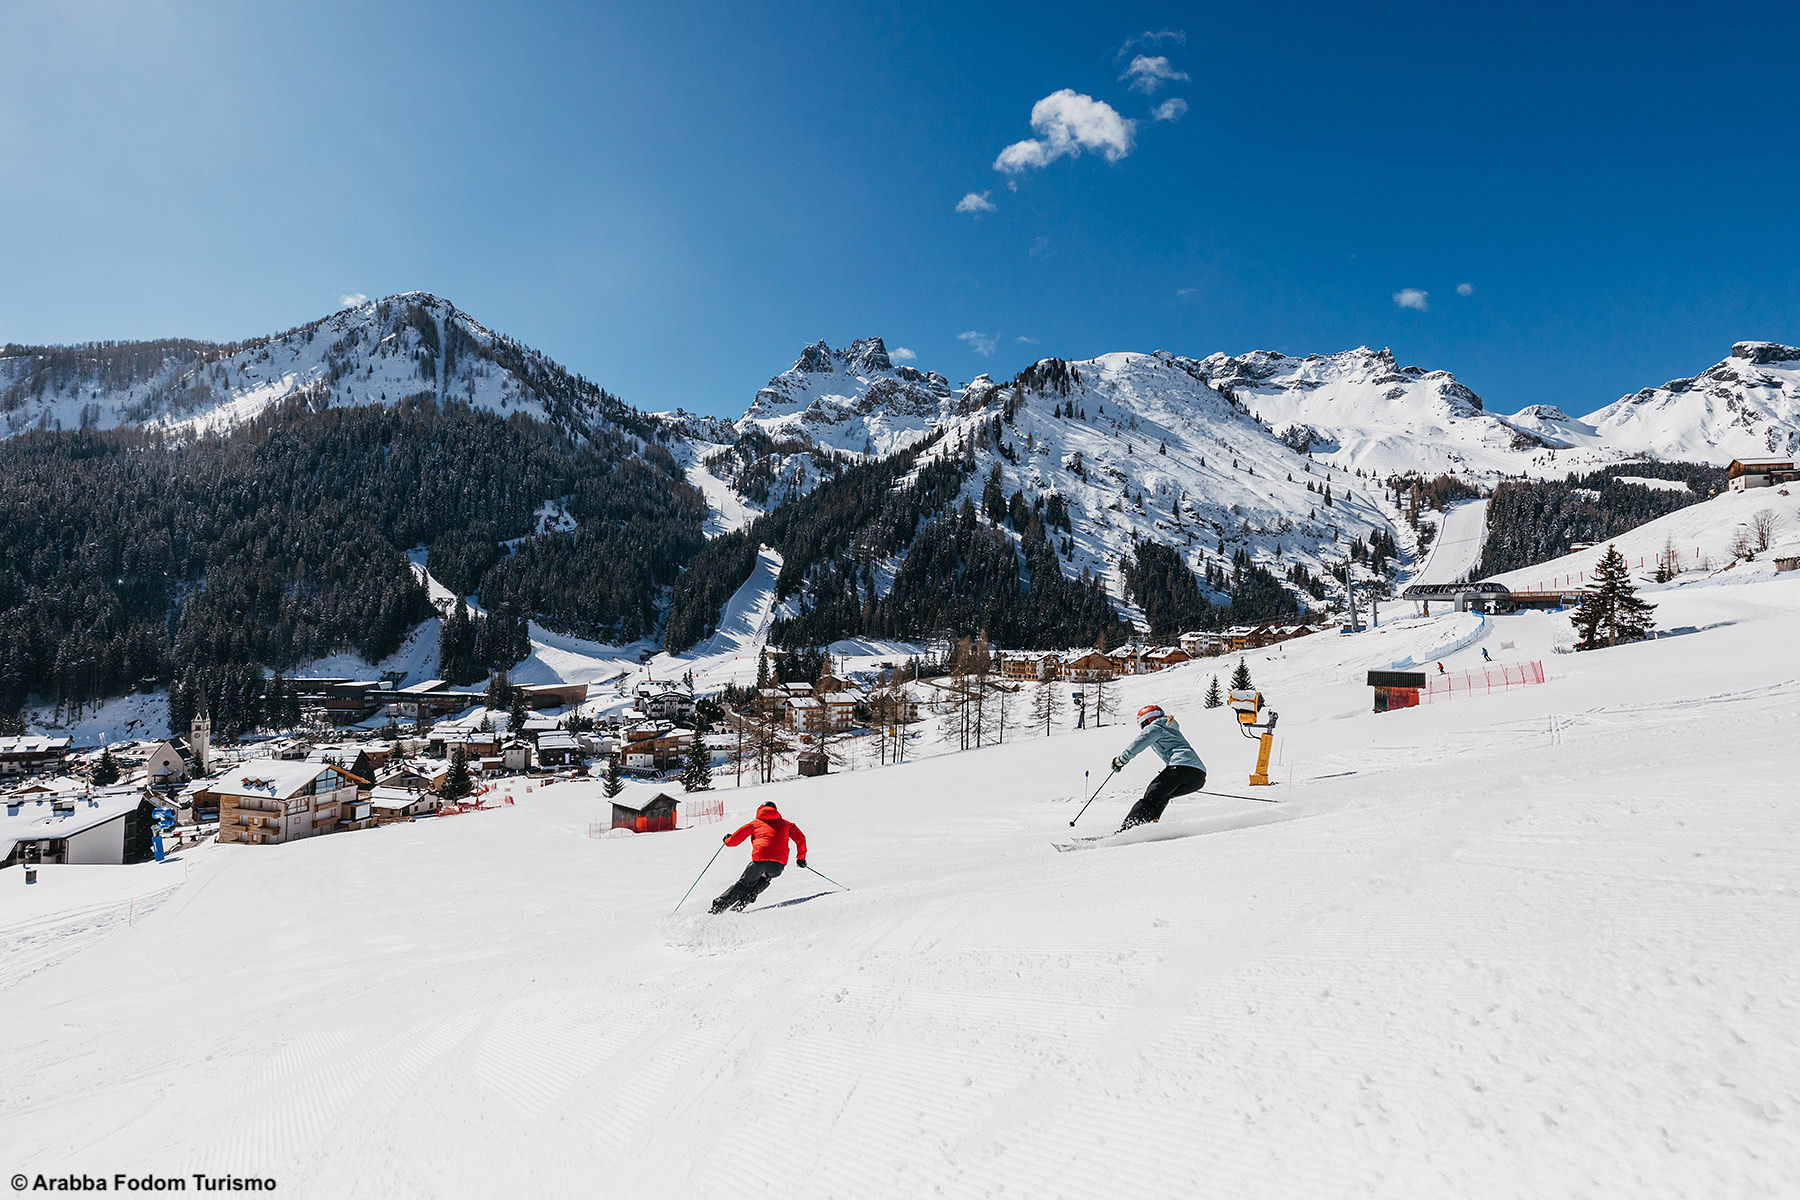 Per vivere le Dolomiti come non si sono mai viste: Arabba - the Place to Ski, divertimento e adrenalina sulla neve nella zona più cool